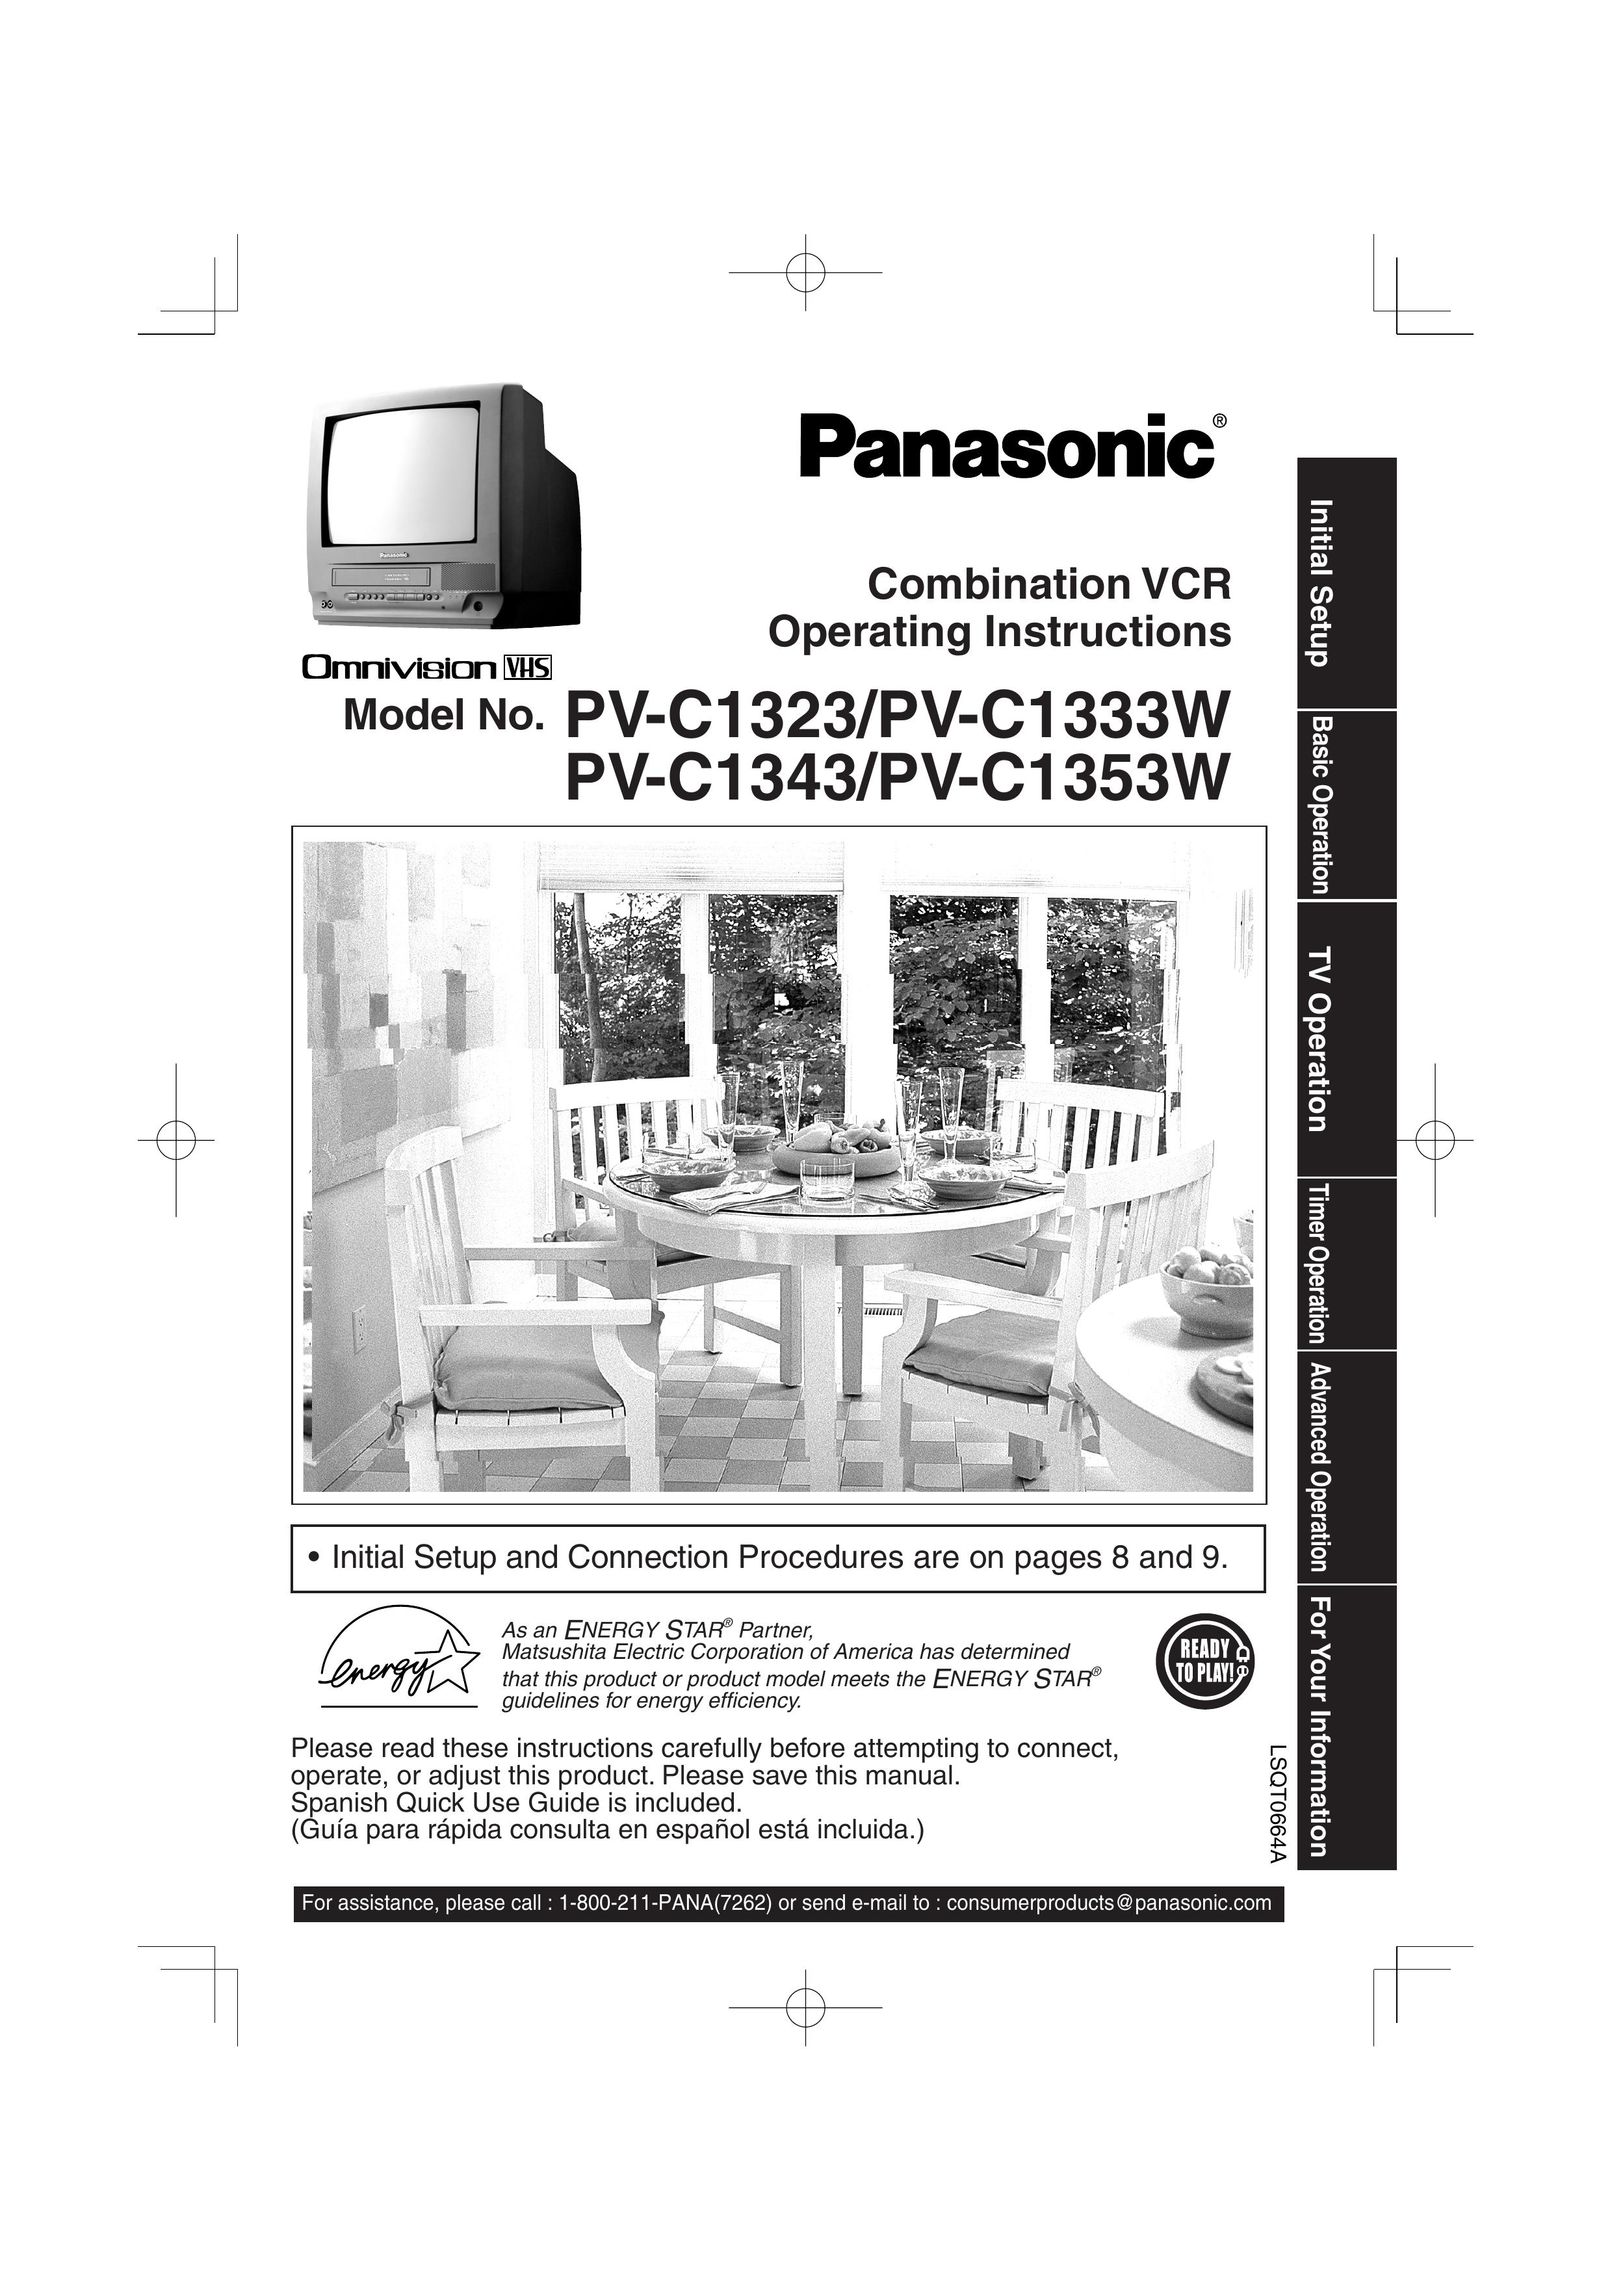 Panasonic PV C1343 TV VCR Combo User Manual